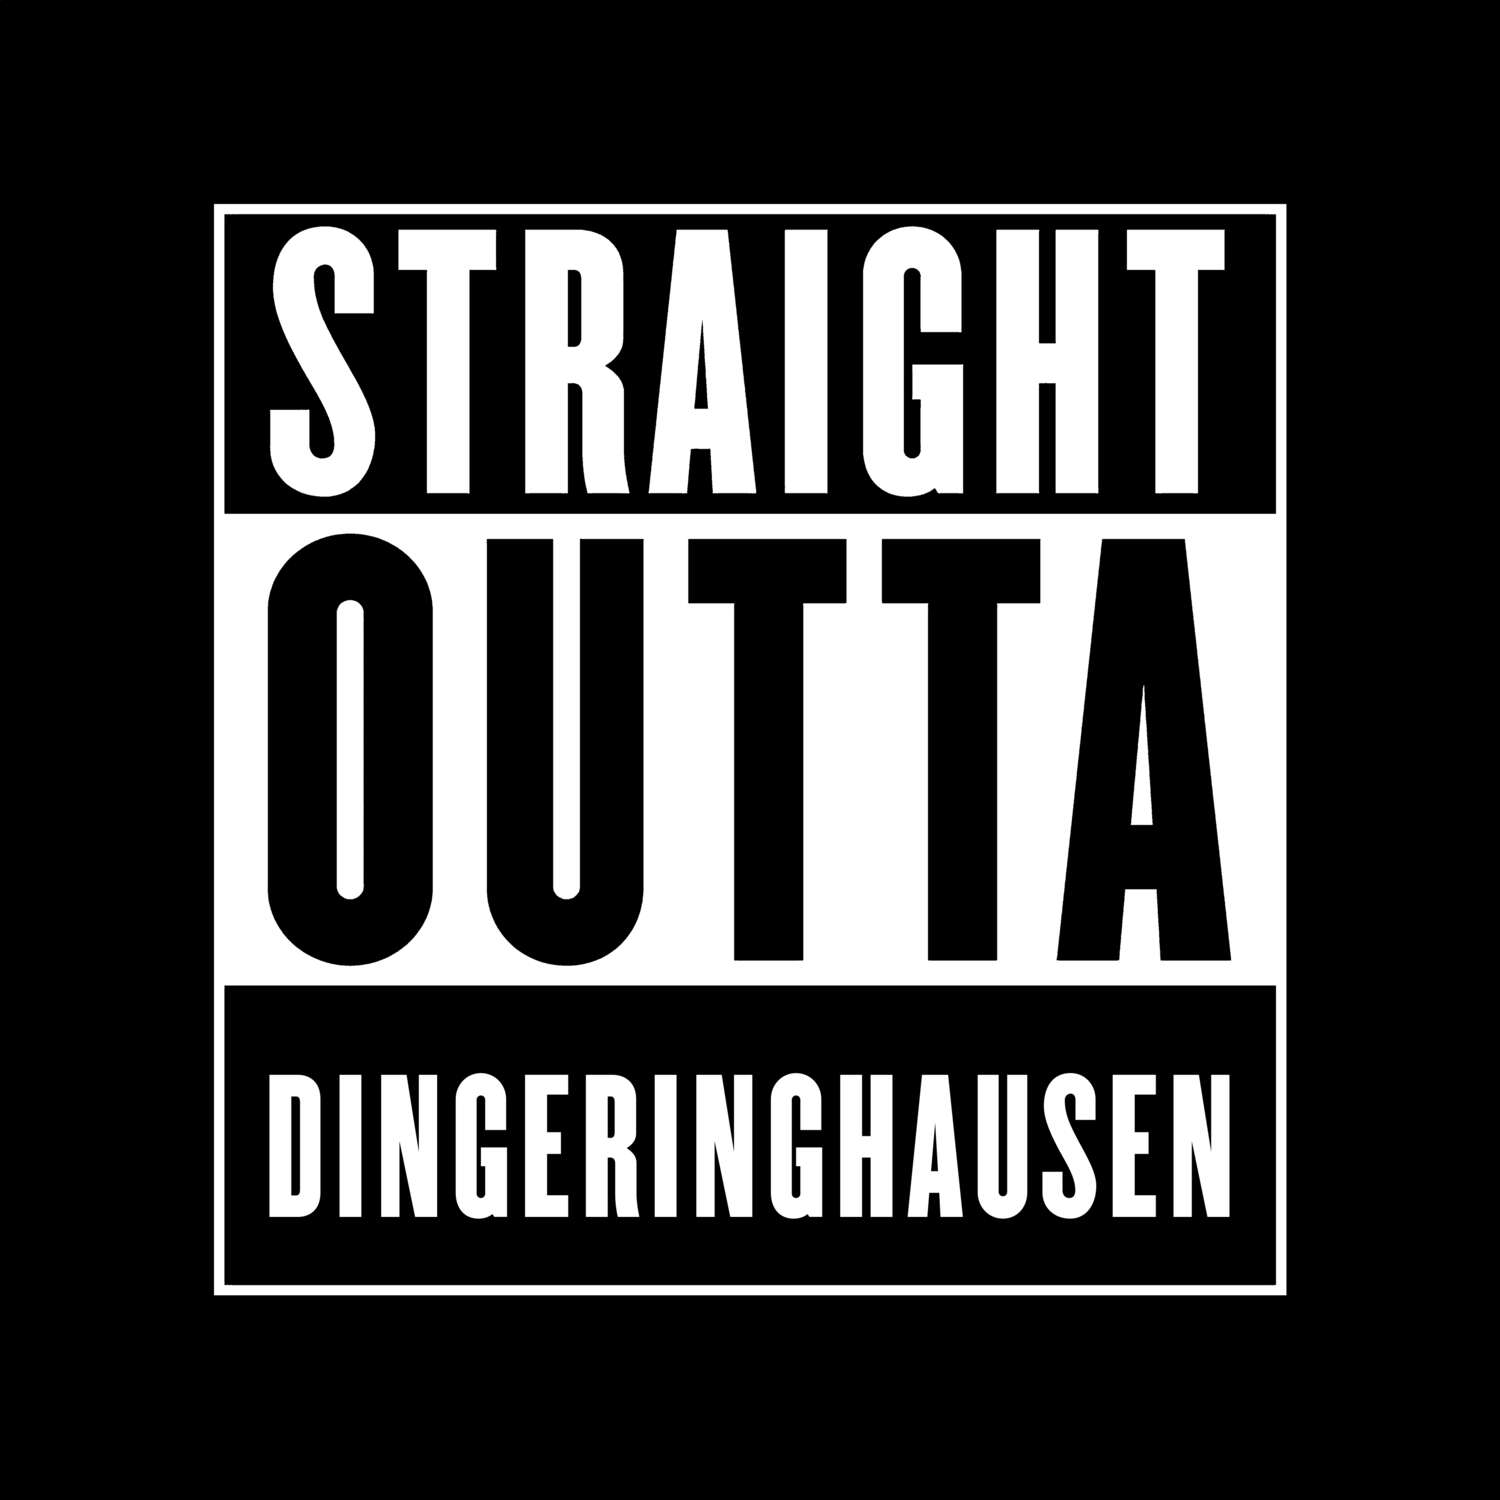 Dingeringhausen T-Shirt »Straight Outta«